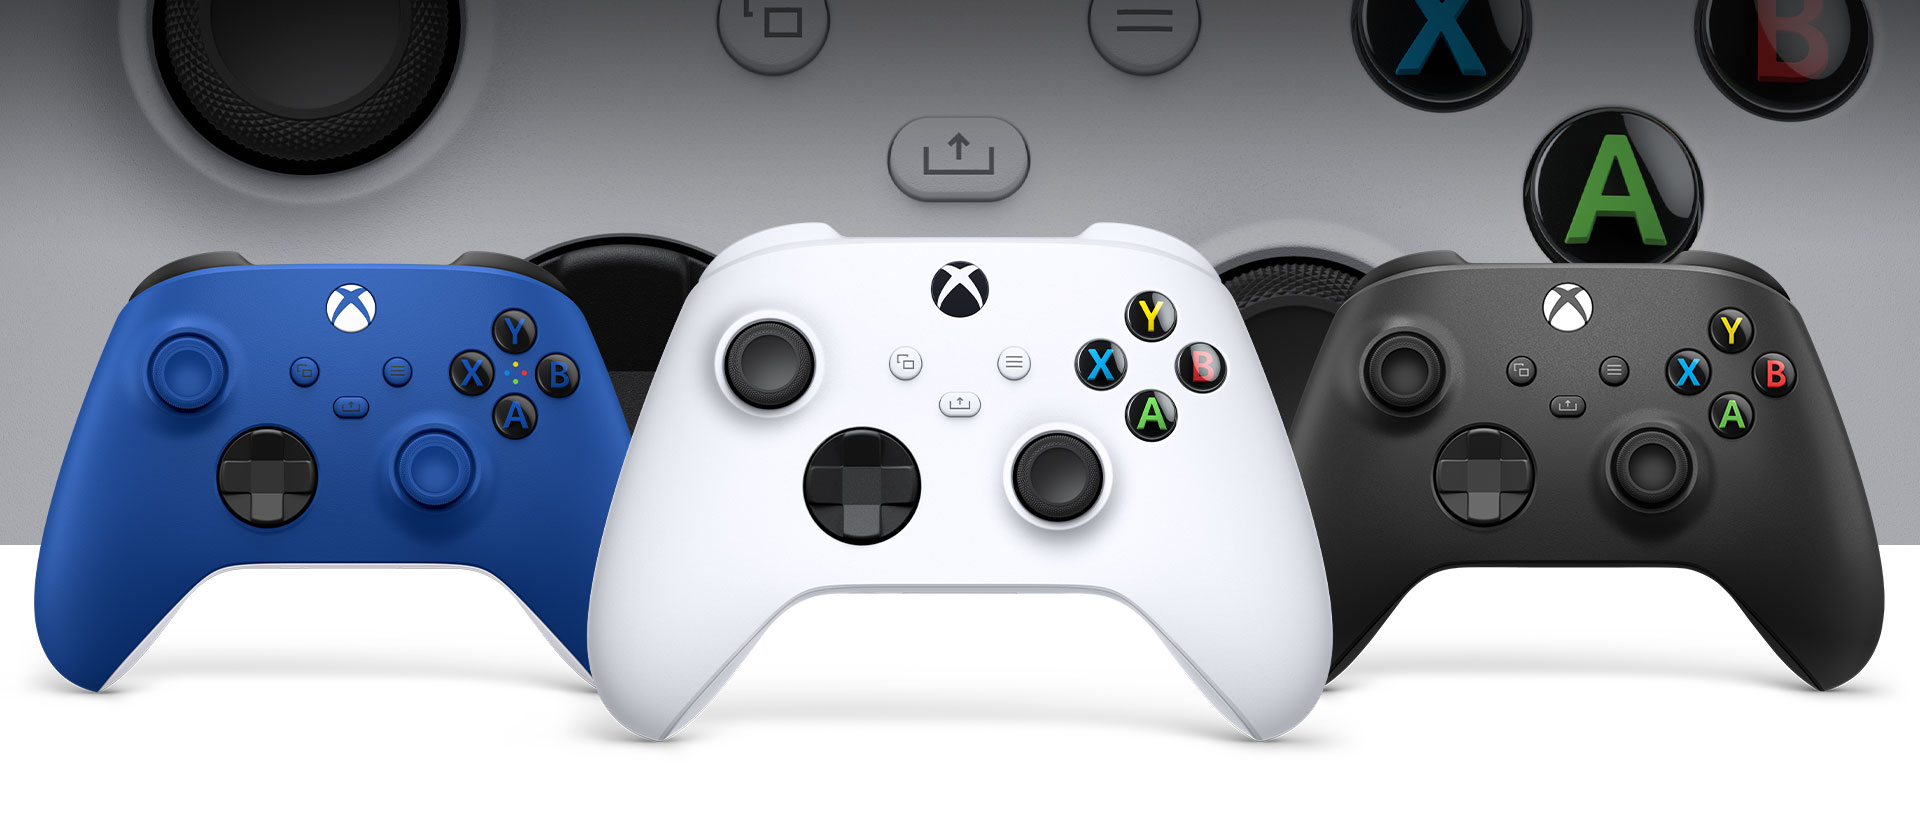 Χειριστήριο Xbox σε λευκό χρώμα μπροστά με το μαύρο και το μπλε χειριστήριο δίπλα του